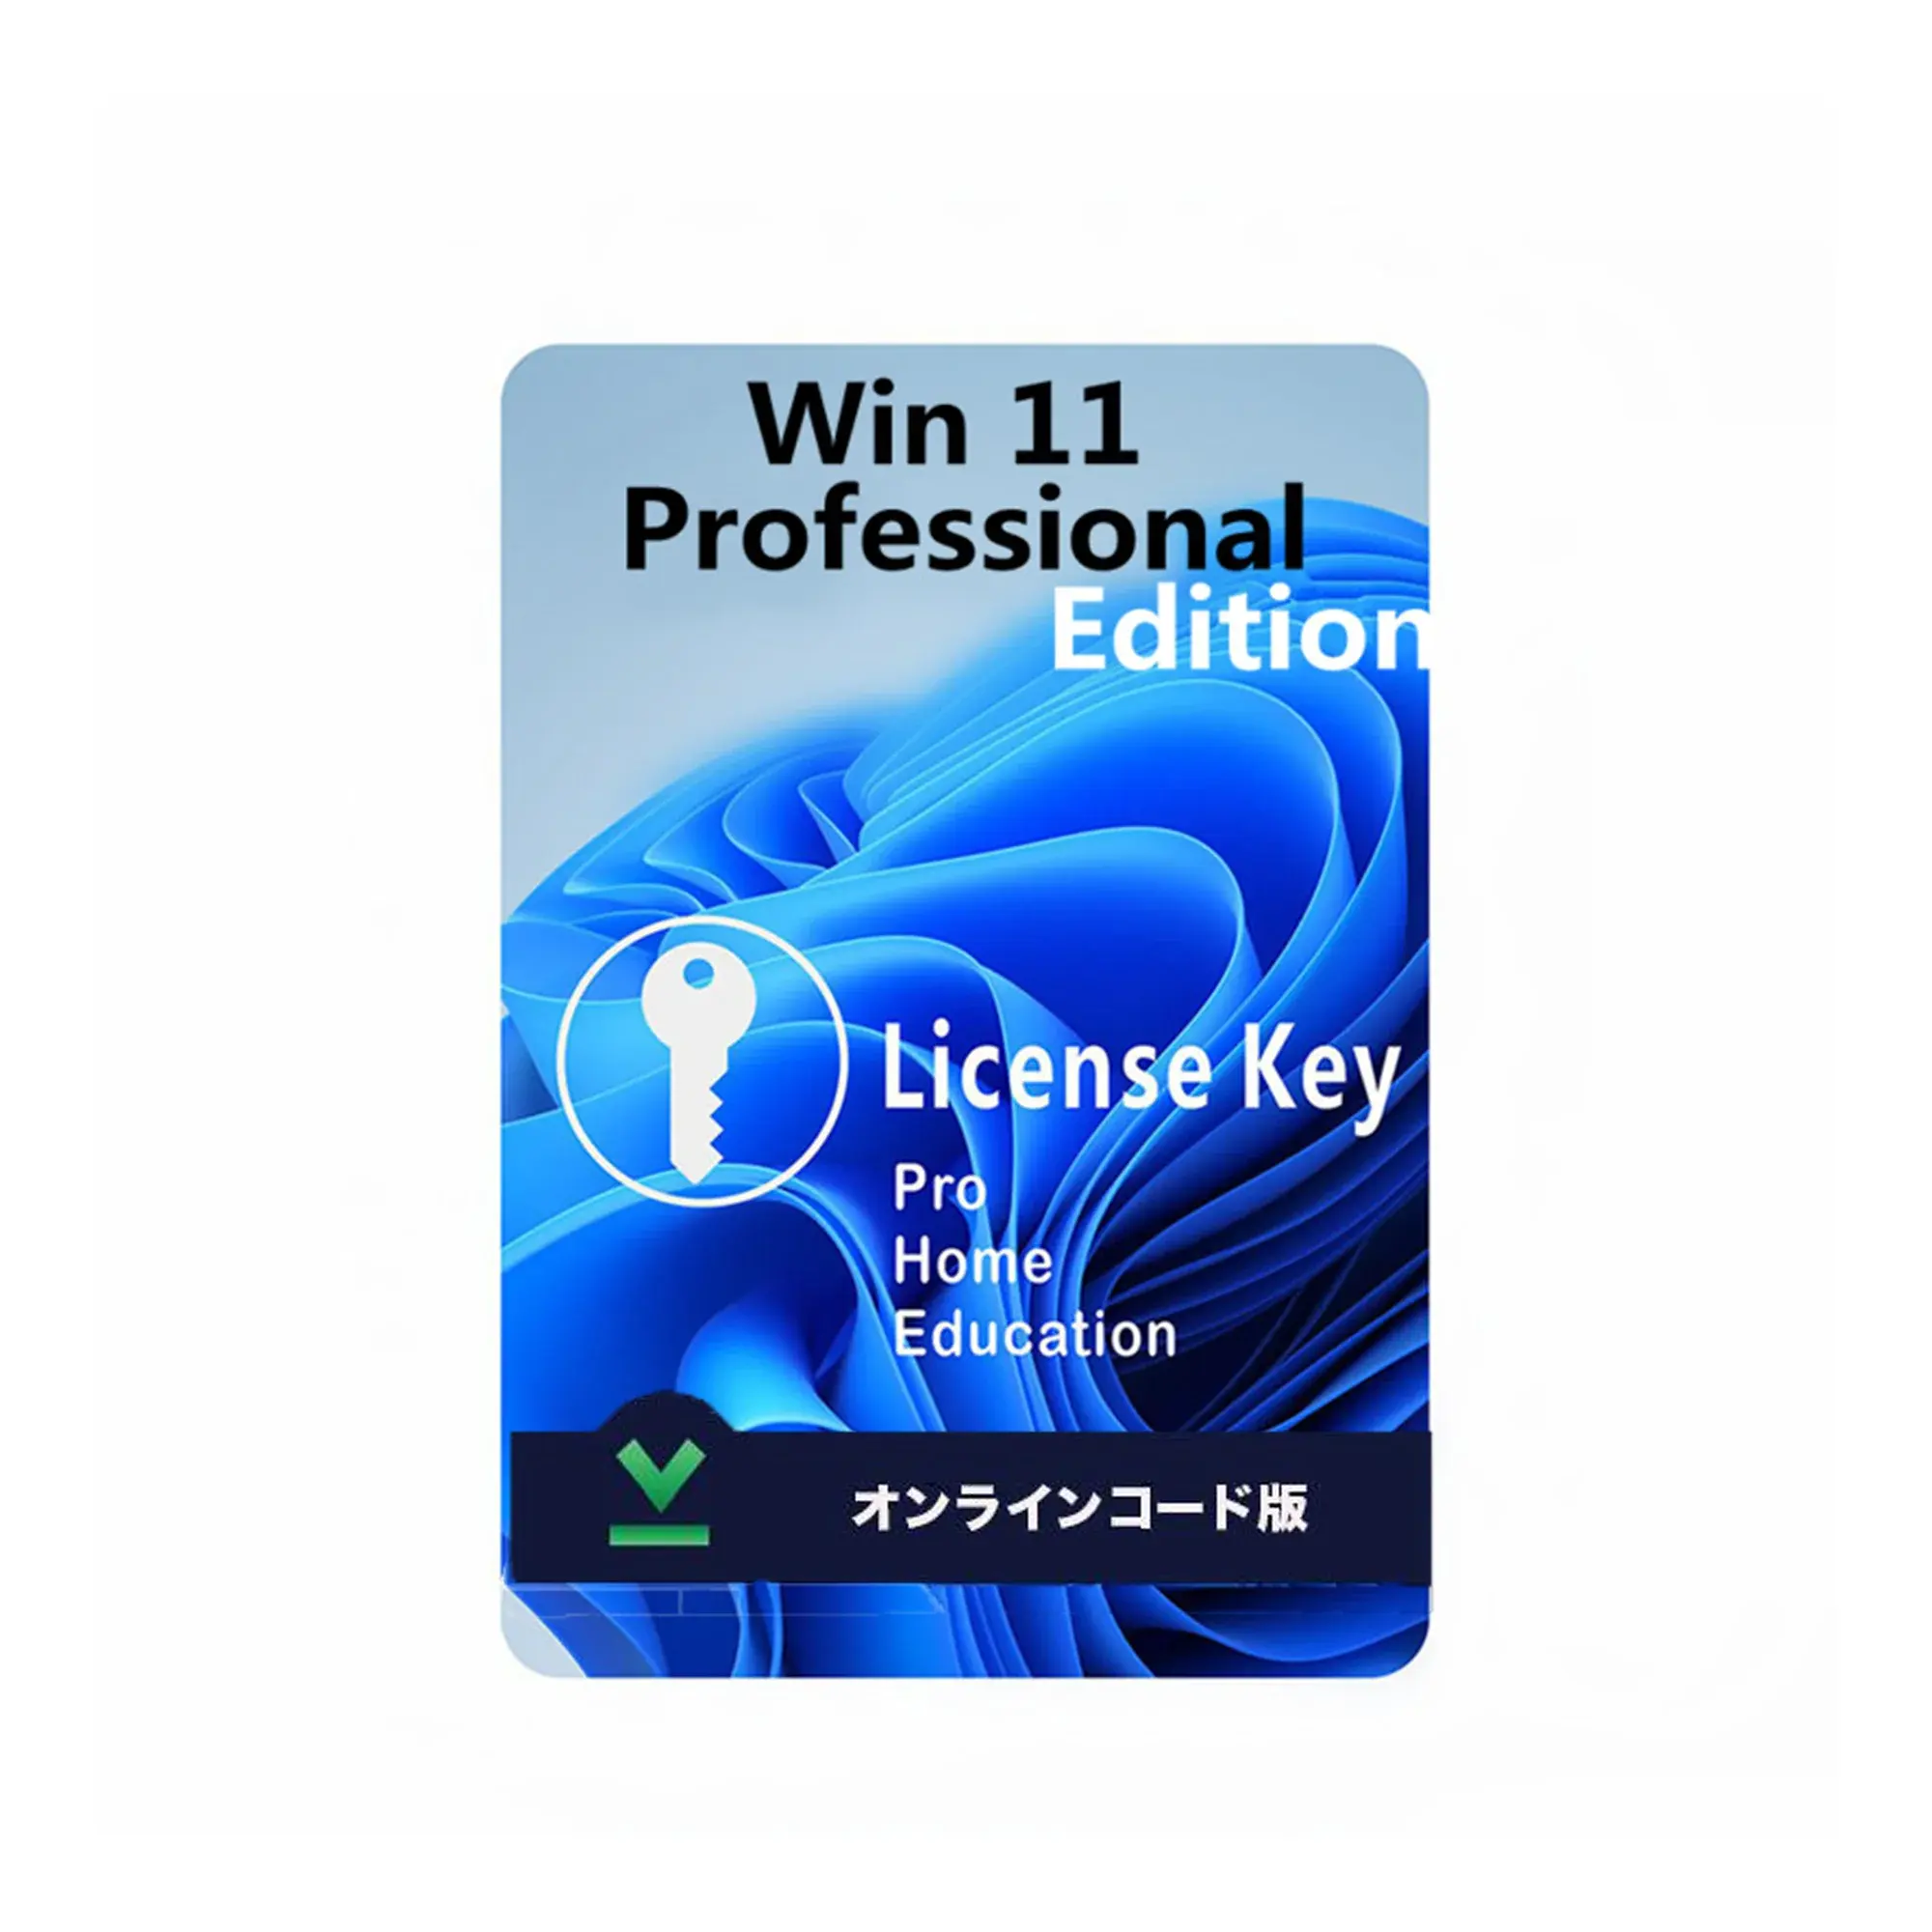 มีจําหน่ายของแท้ 100% Win 11 pro Key ใบอนุญาตขายปลีก การเปิดใช้งานออนไลน์ 100% Win 11 Professional Key